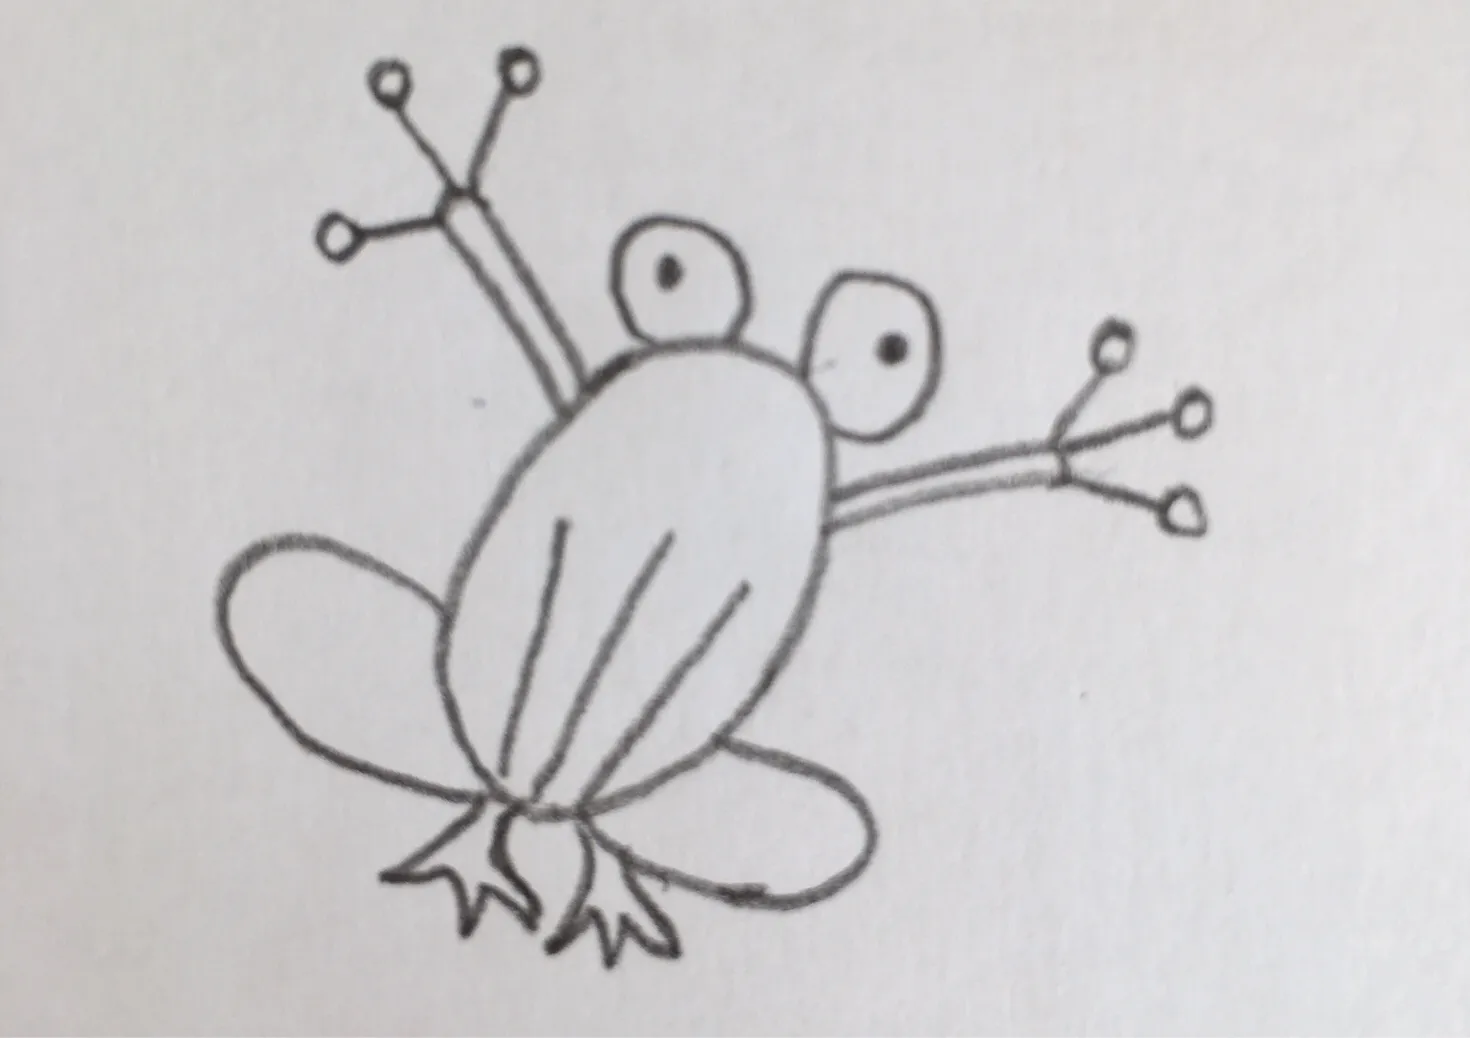 少儿漂亮美术大全 创意简笔画青蛙的画法过程图💛巧艺网